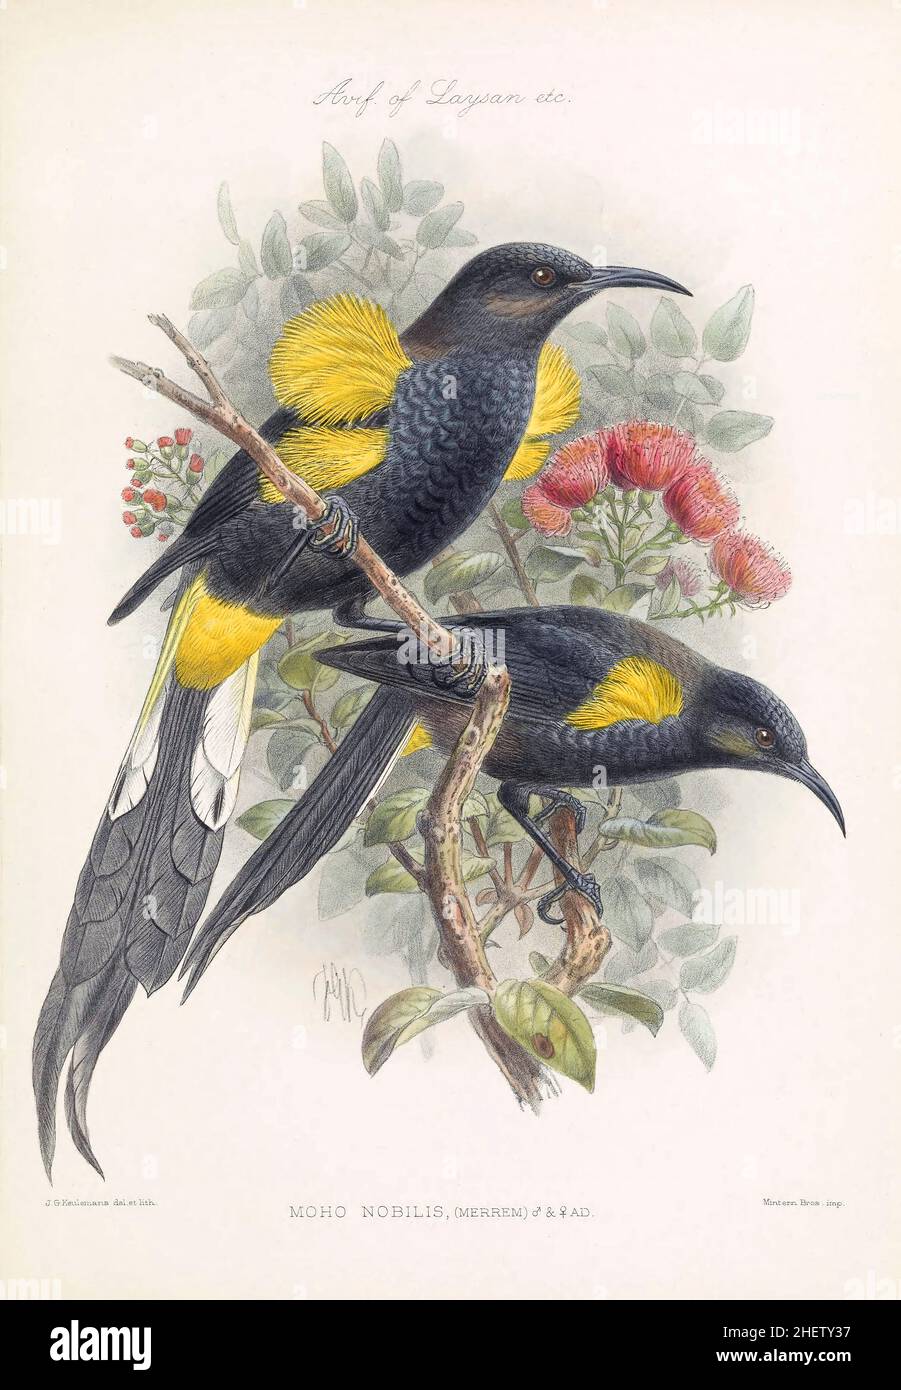 MOHO Nobilis (männliche und weibliche Erwachsene) oder Hawaiʻi ʻōʻō waren einst auf der Big Island verbreitet, aber durch die Sammlung seines Gefieders für private Sammlungen, durch Moskitos übertragene Krankheiten und die Abholzung seines natürlichen Lebensraums zum Aussterben getrieben. Foto einer farbigen Platte aus einem illustrierten Buch über die Vögel der Hawaiianischen Inseln, das 1893 veröffentlicht wurde. Stockfoto